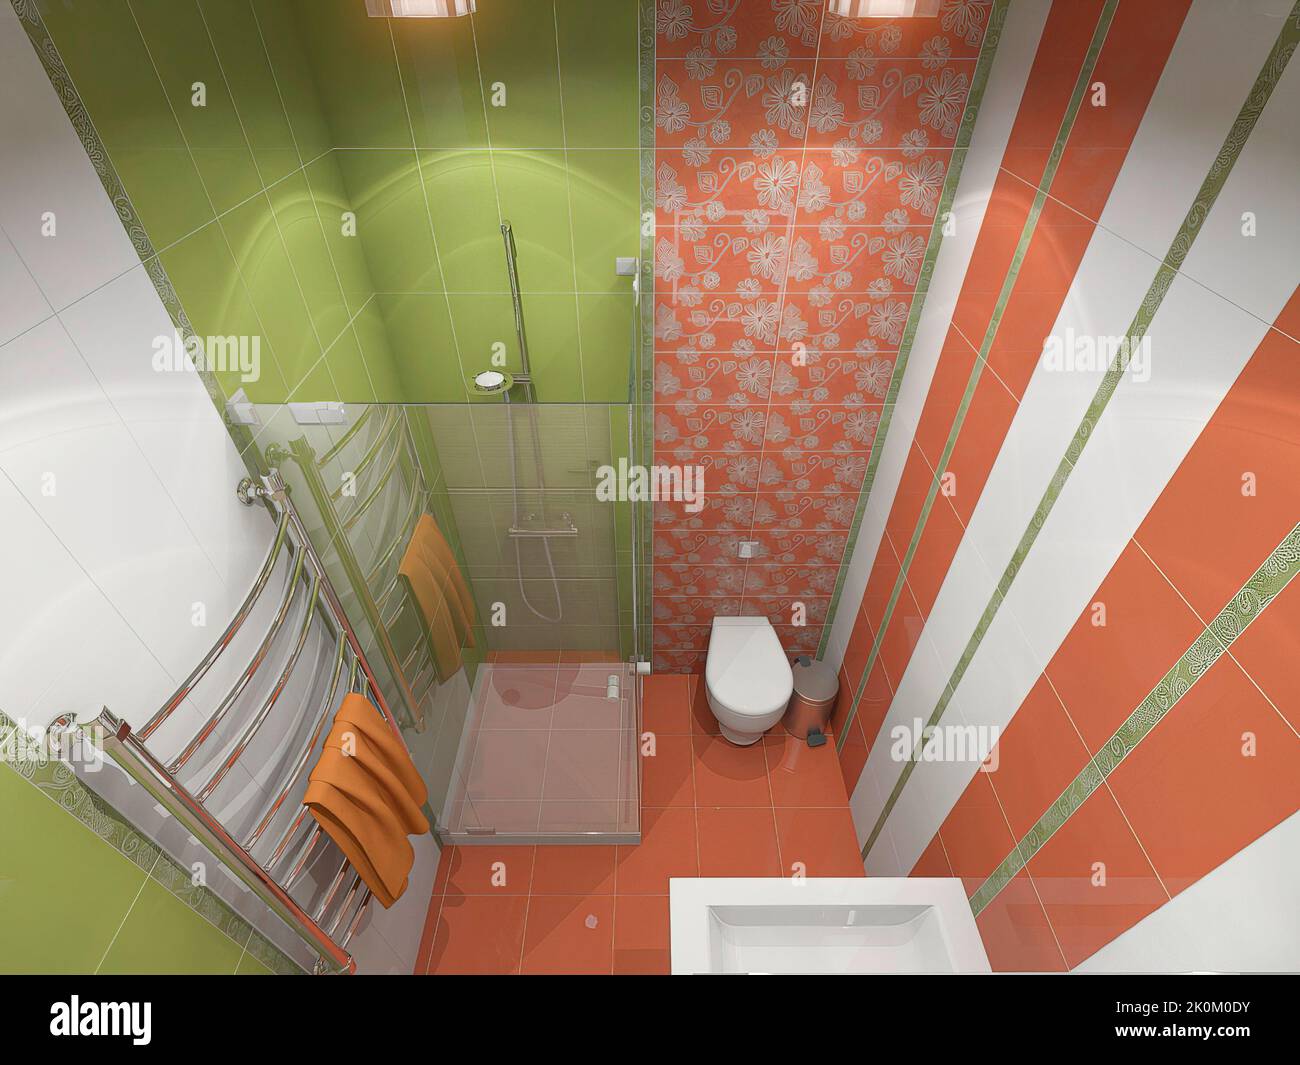 3d rendu d'une salle de bain dans les couleurs vert vif et orange. 3d illustration d'une petite salle de douche. Banque D'Images